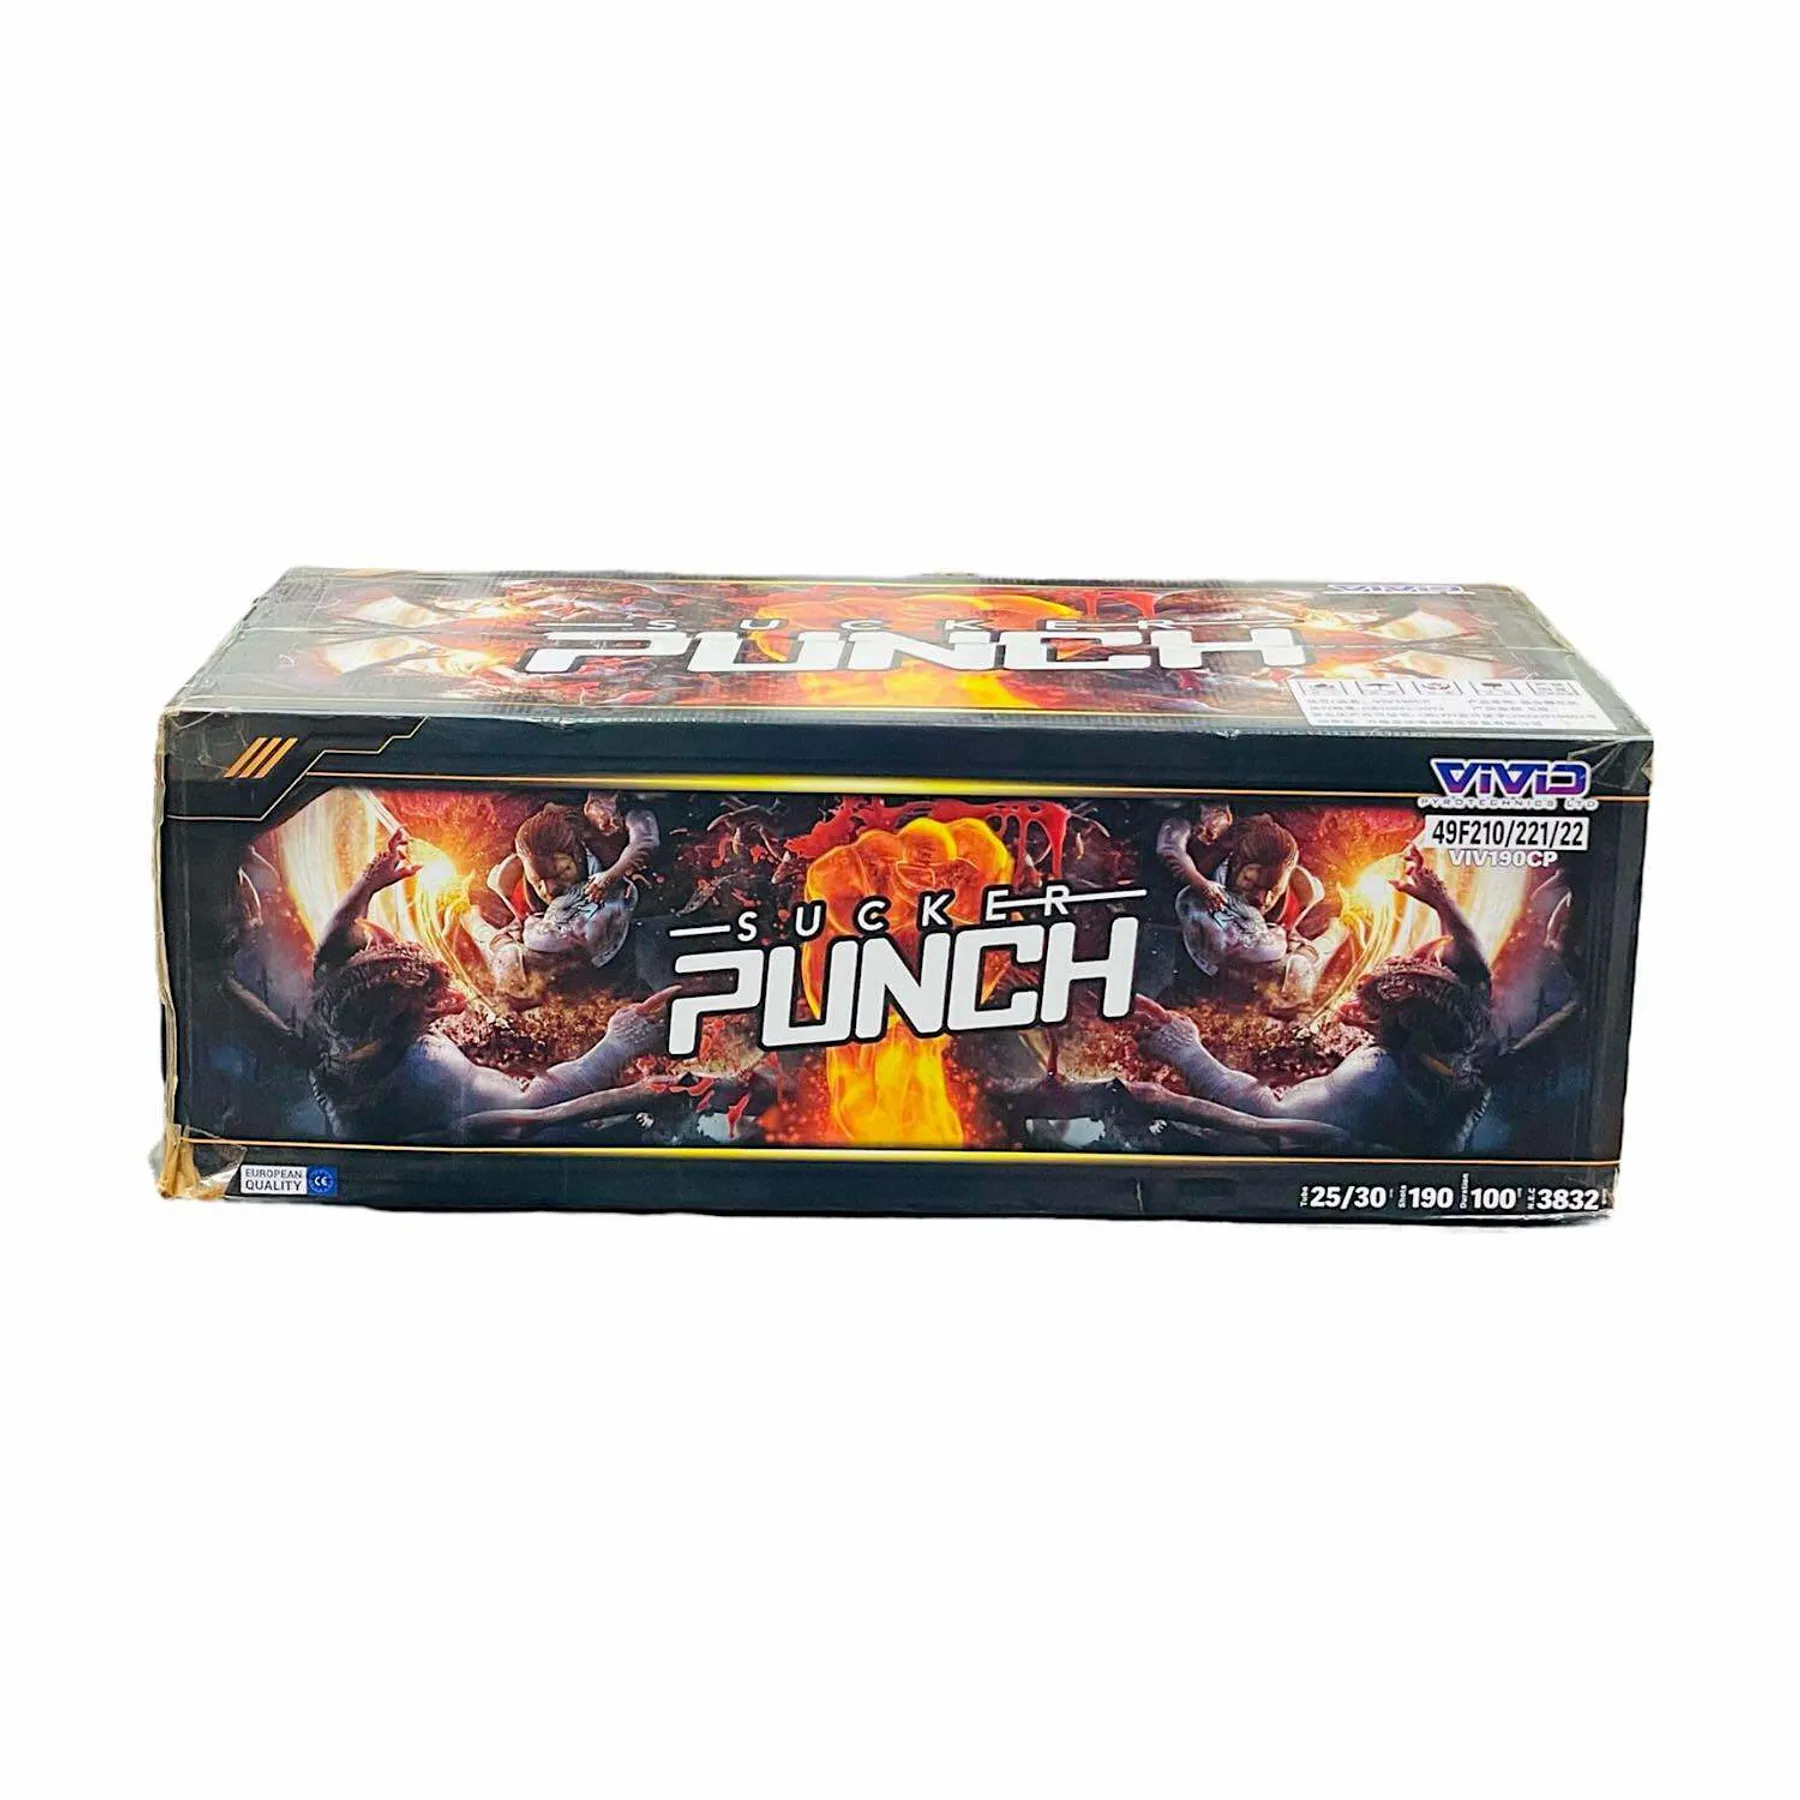 Sucker Punch Manchester Fireworks